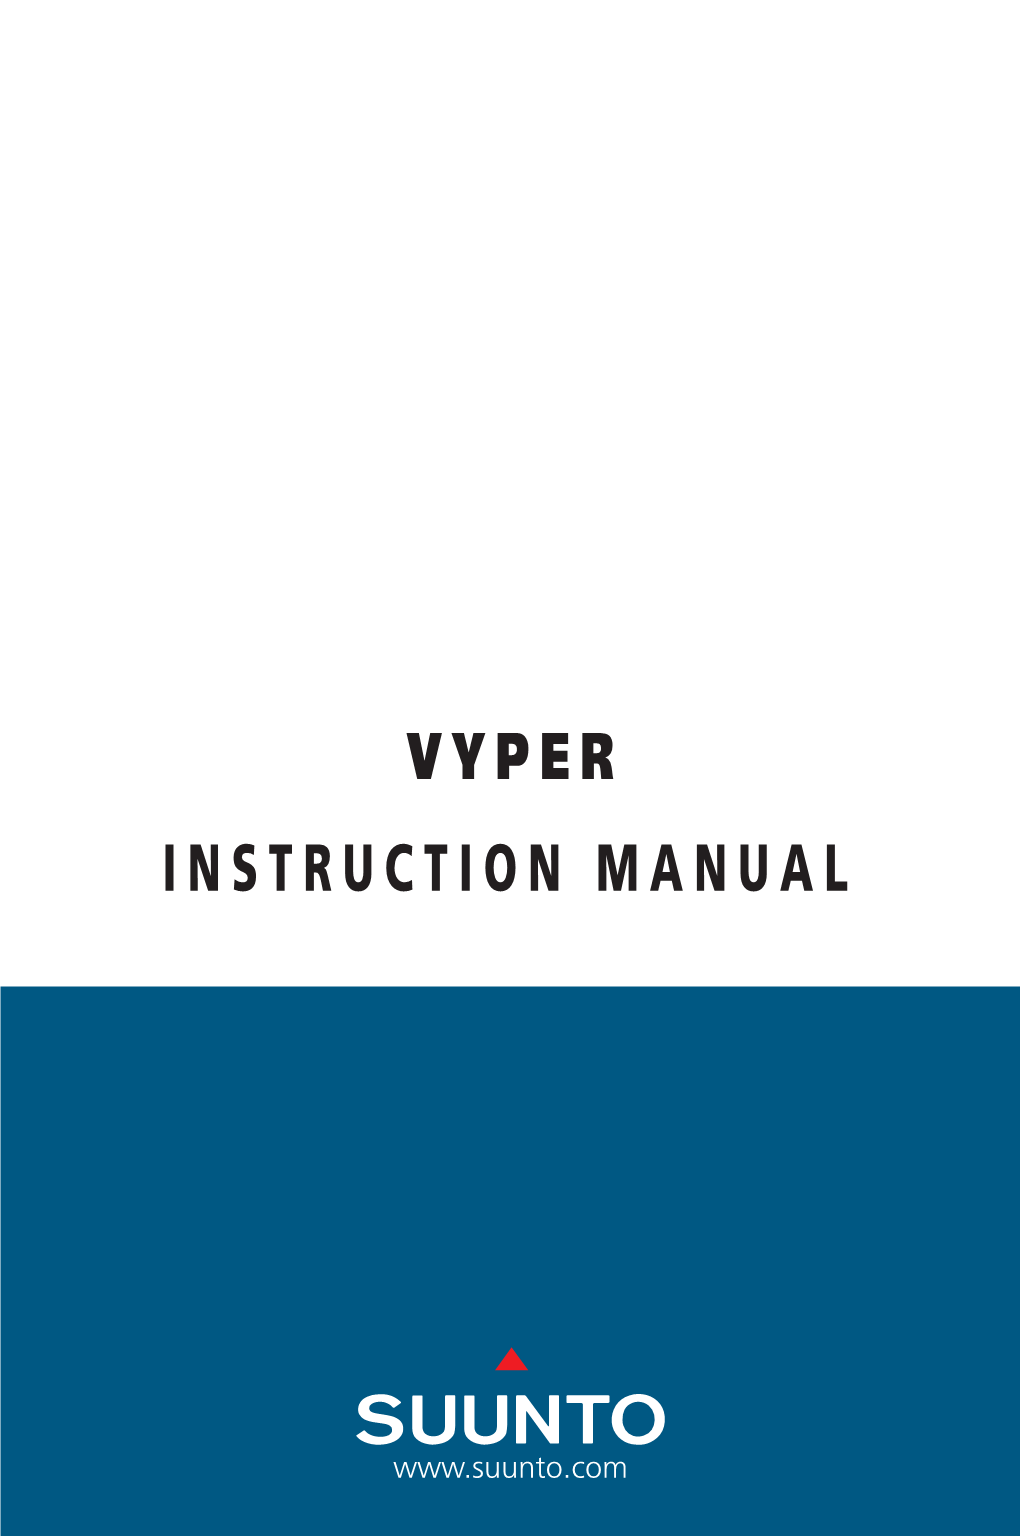 Suunto Vyper Manual